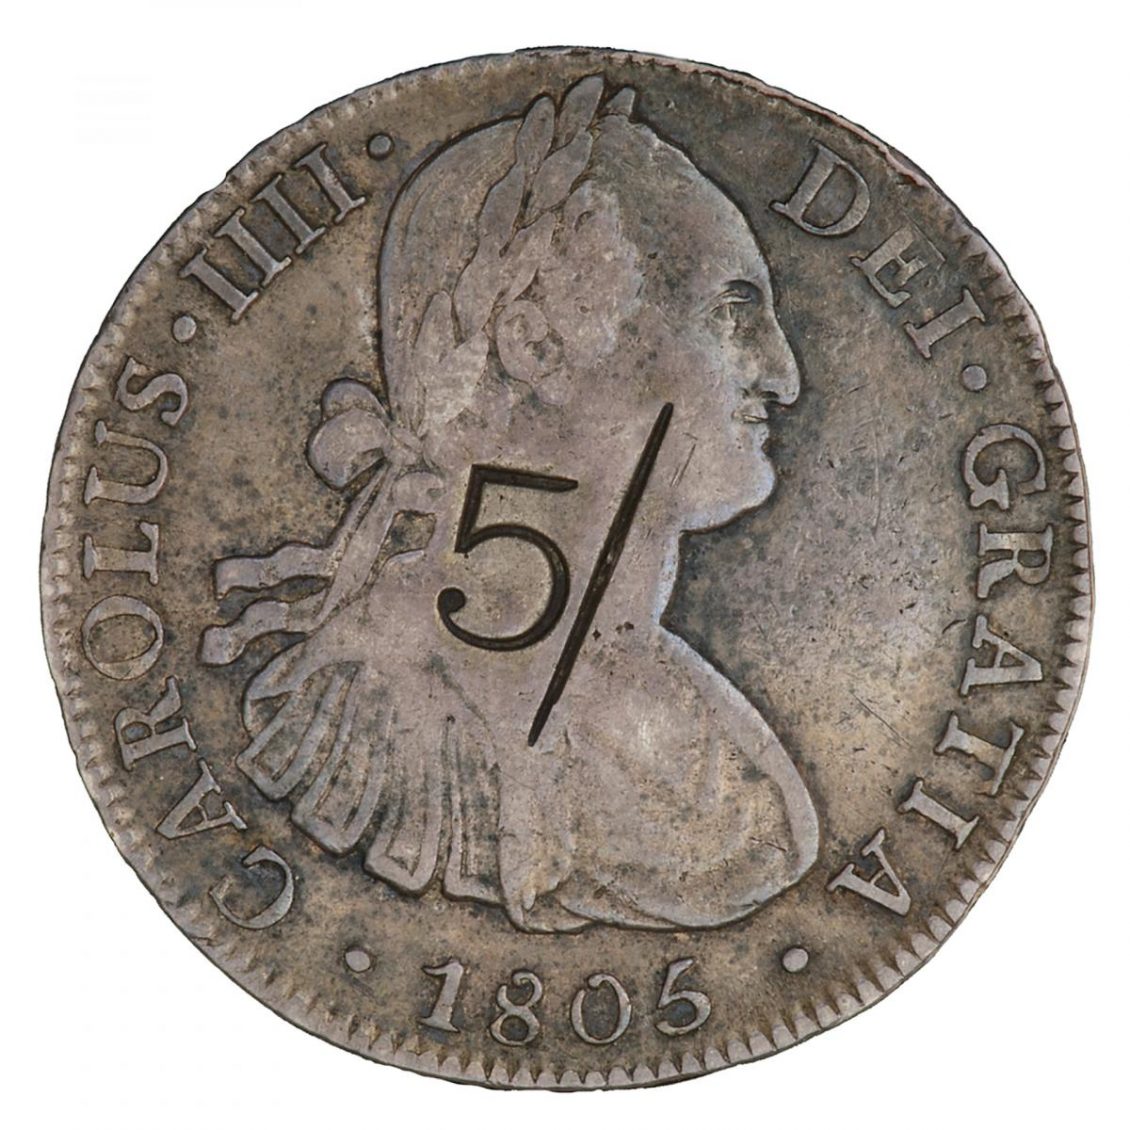 Pièce de monnaie en argent sur laquelle on peut voir le profil d’un homme coiffé d’une couronne de laurier et le chiffre « 5 » frappé par-dessus.